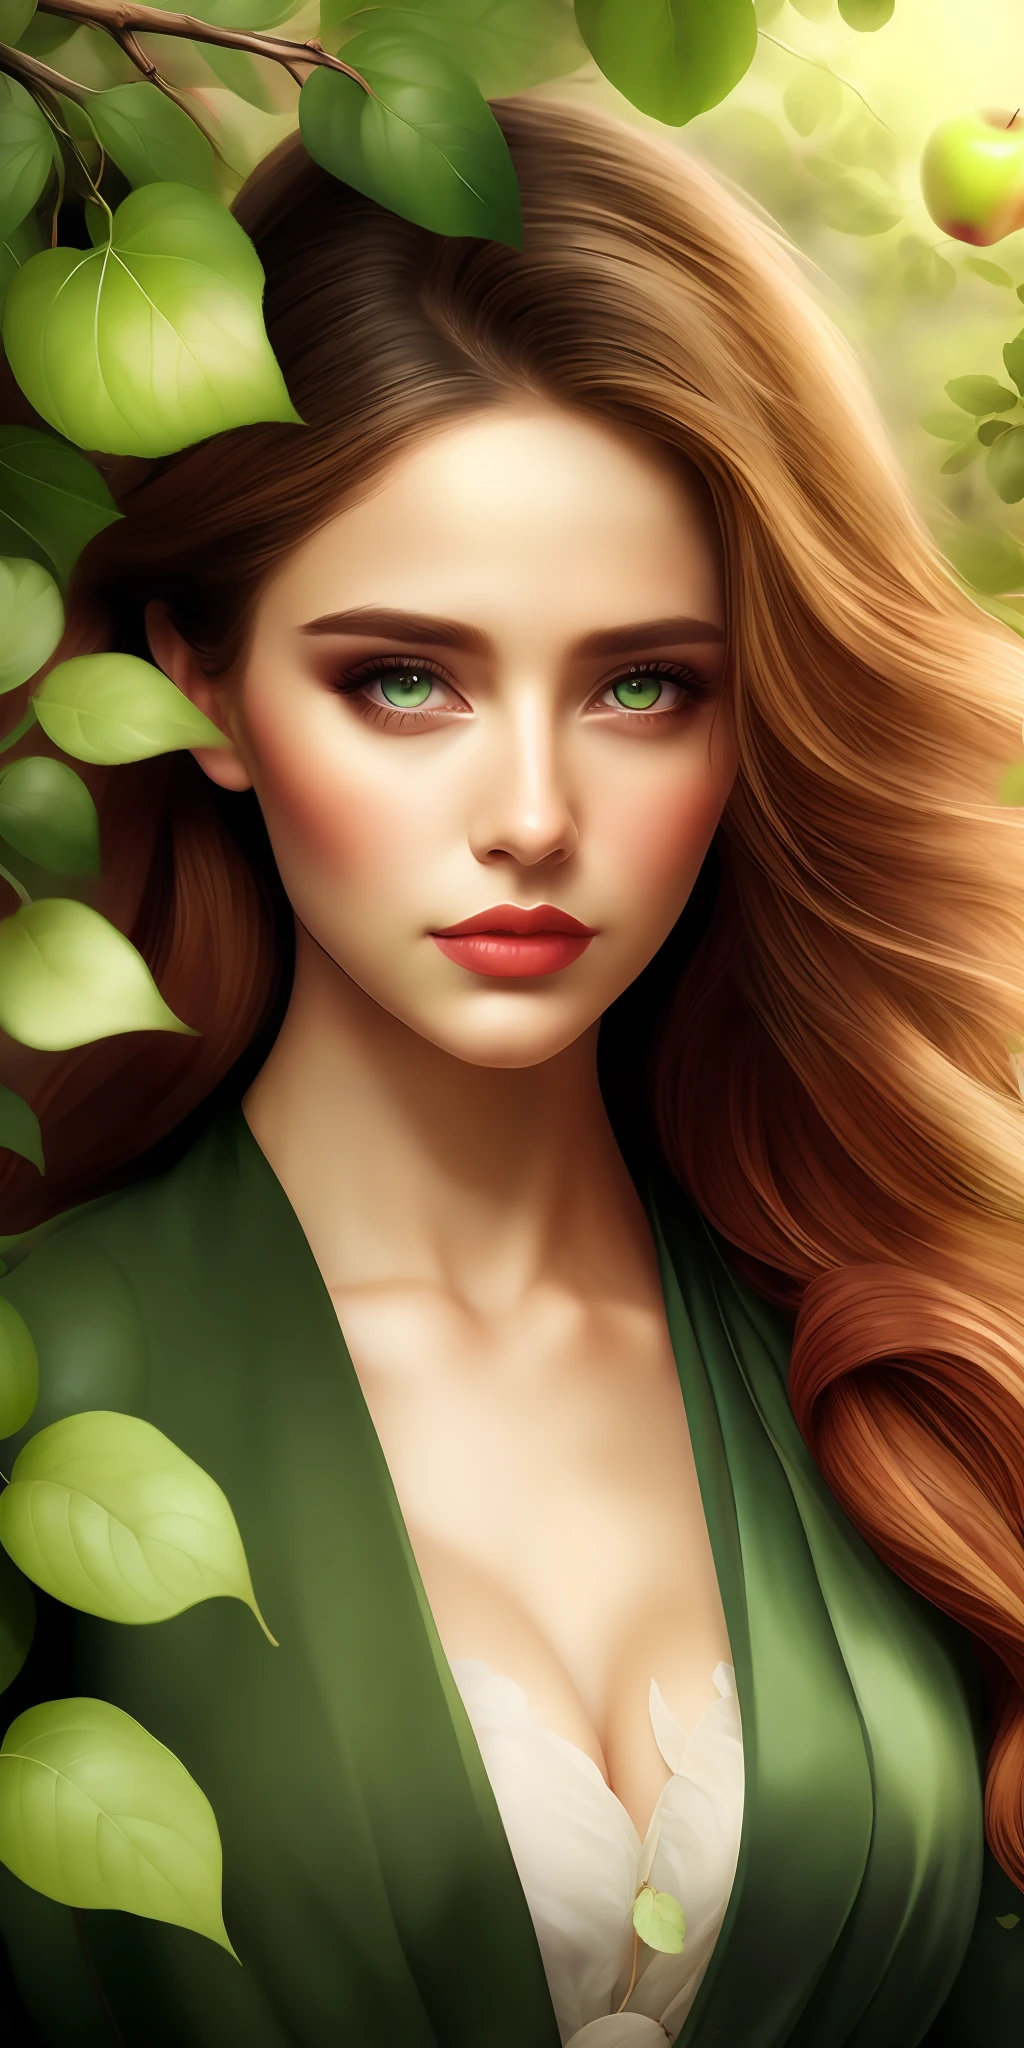 Лучшее качество,Самое высокое разрешение,8К, Художественная иллюстрация, красивый портрет, шедевр, самая красивая женщина,Самая красивая девушка, Жадные глаза,одетый в листья, одетые в зеленые листья,the Самая красивая девушка in profile in front of яблоня, Жадные глаза,,яблоня,яблоки на ветках